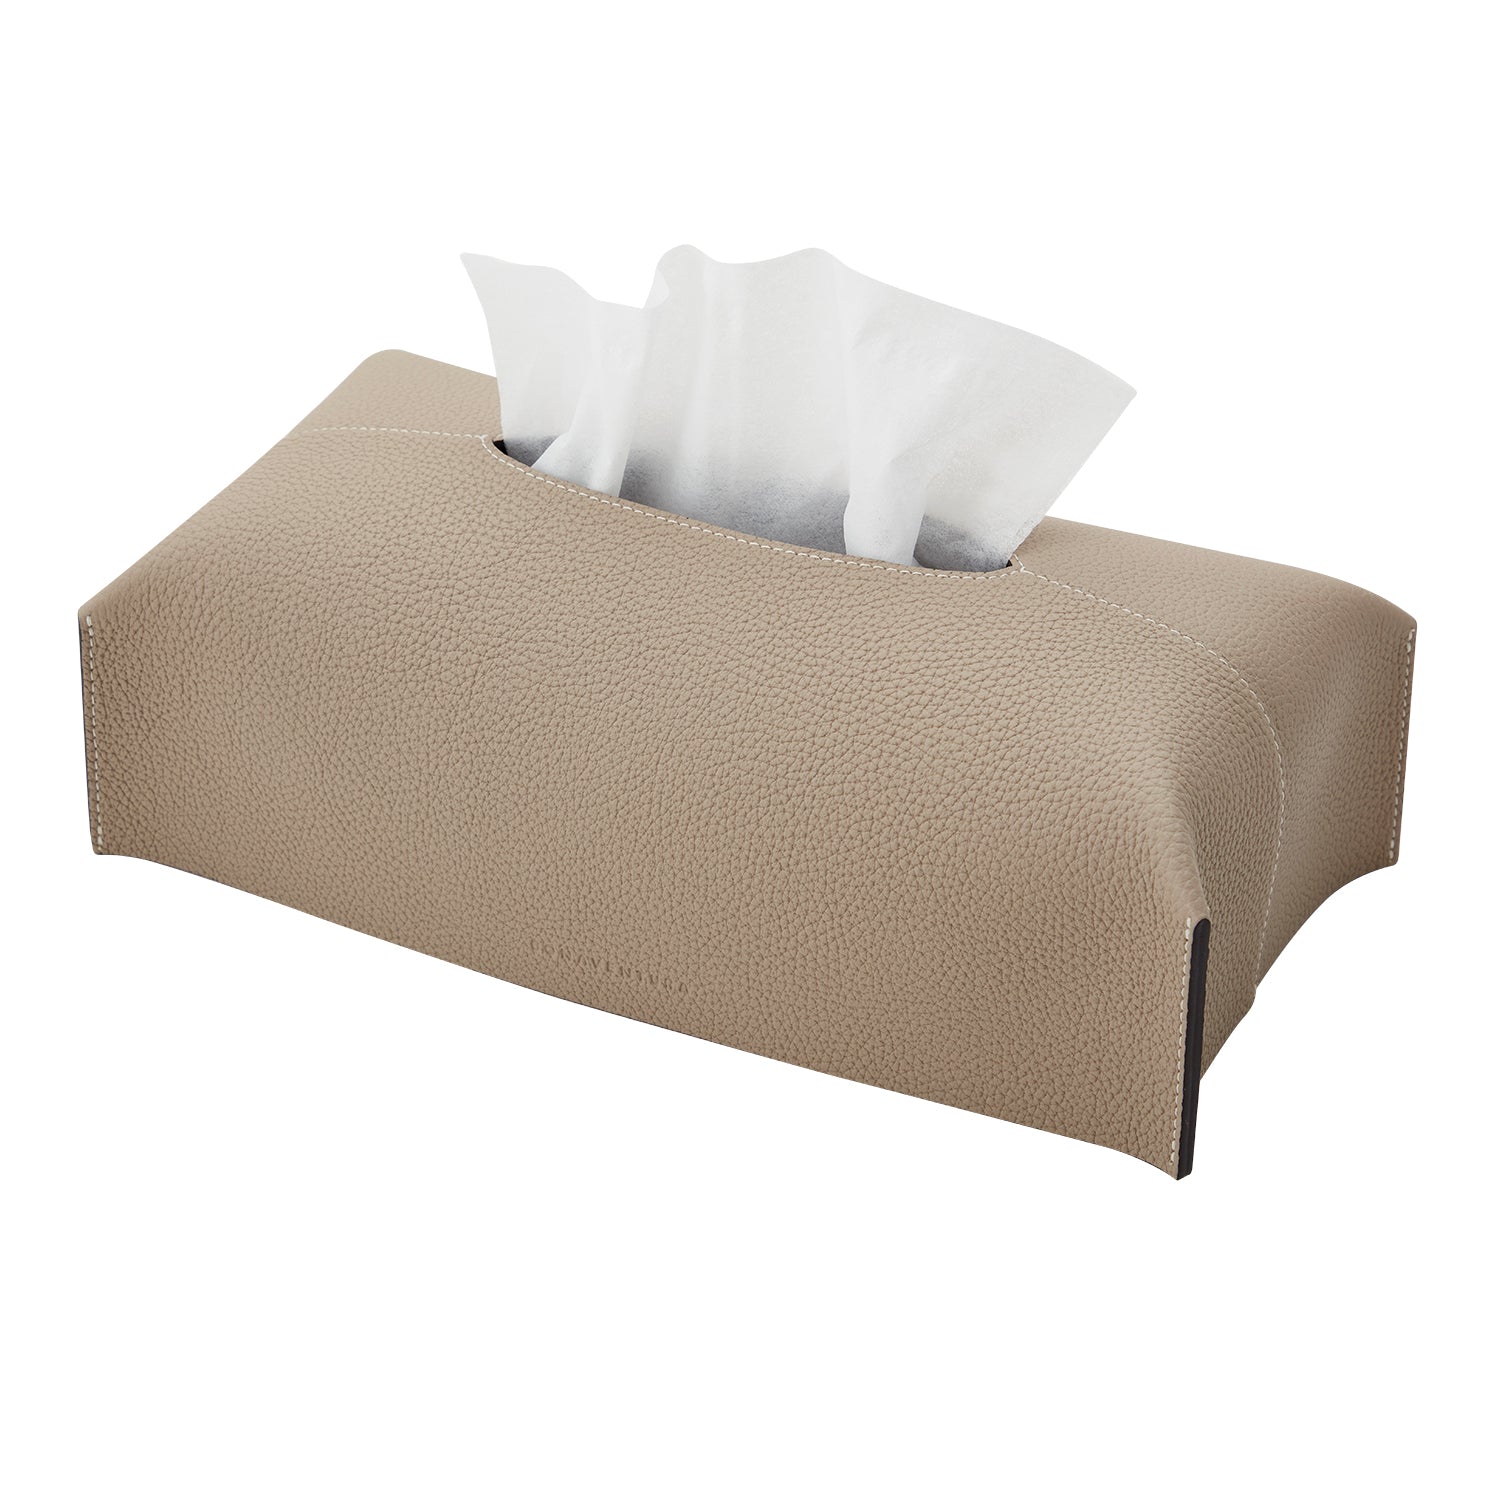 Tissue box cover (regular shrink)